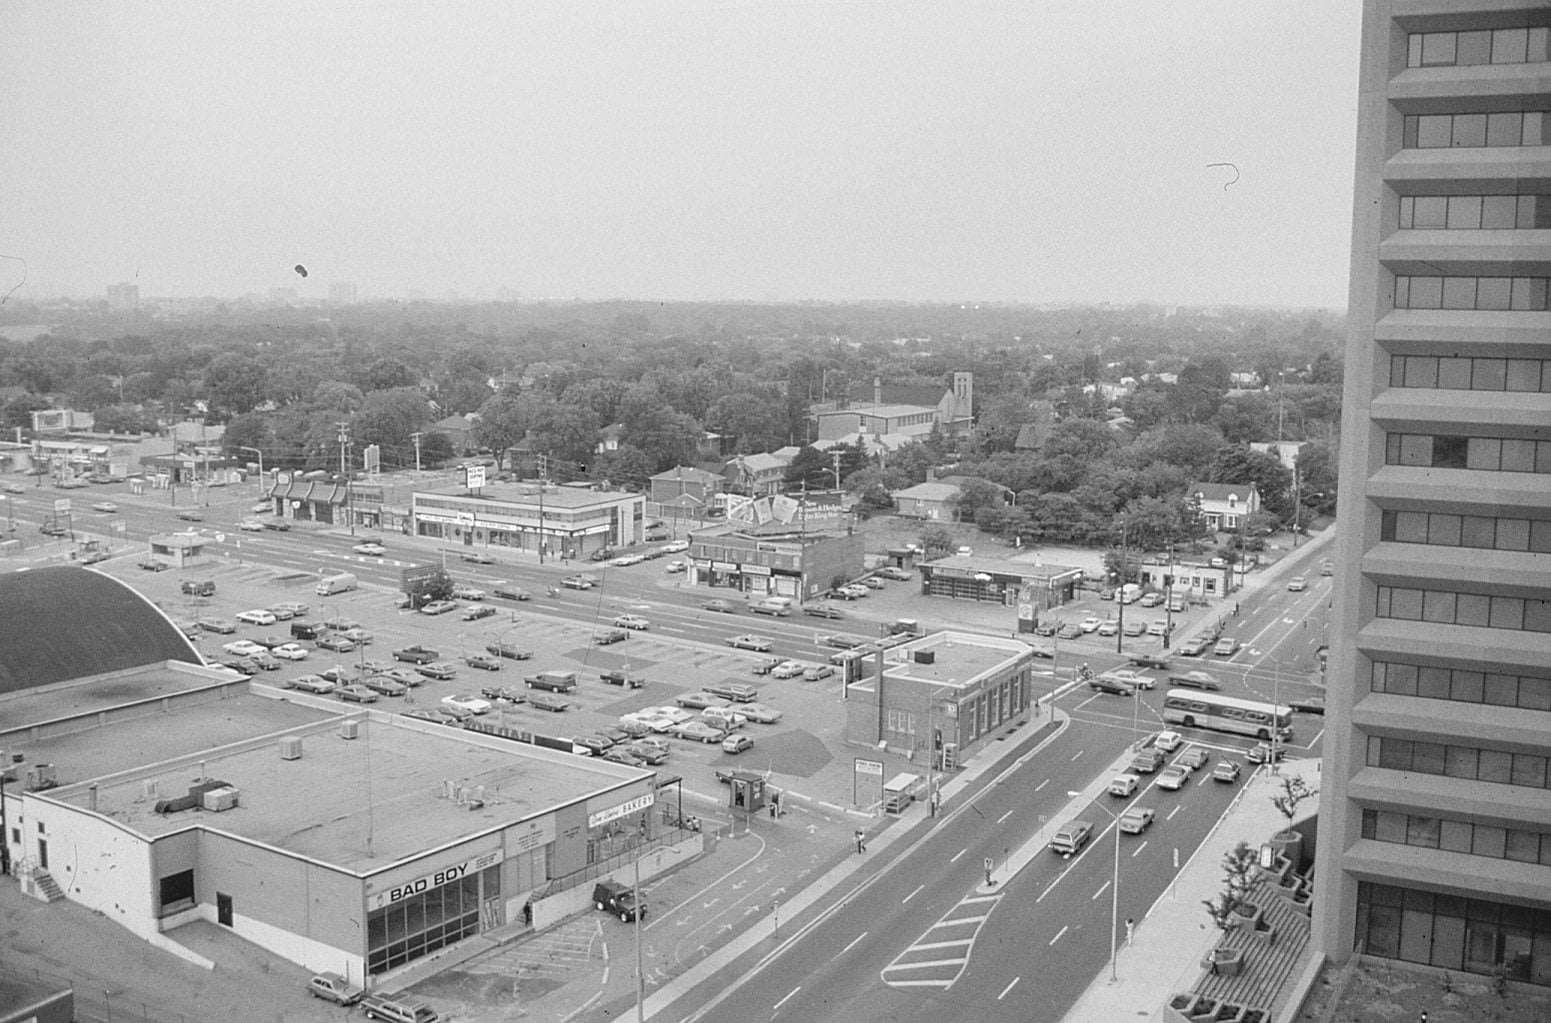 Looking southwest towards Yonge & Sheppard, 1975